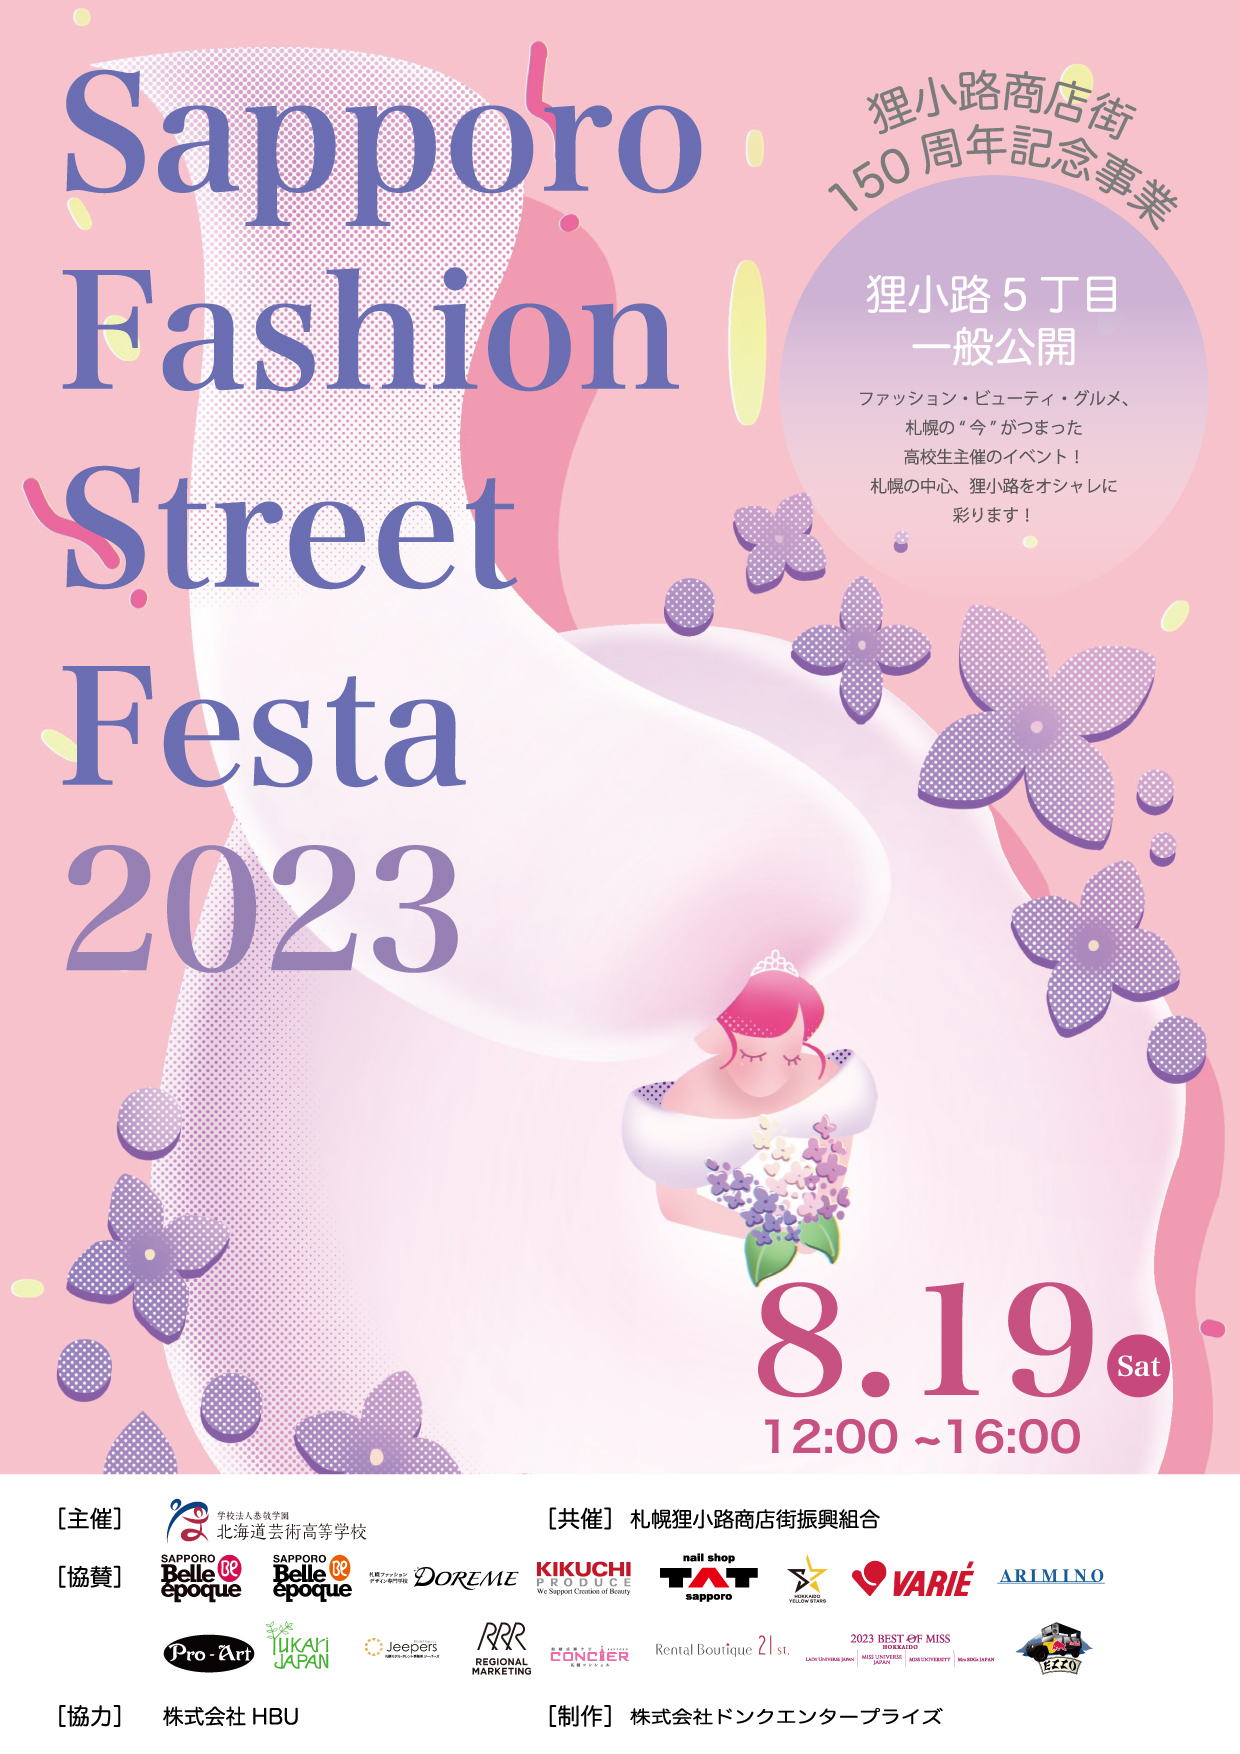 【終了しました】Sapporo Fashion Street Festa 2023